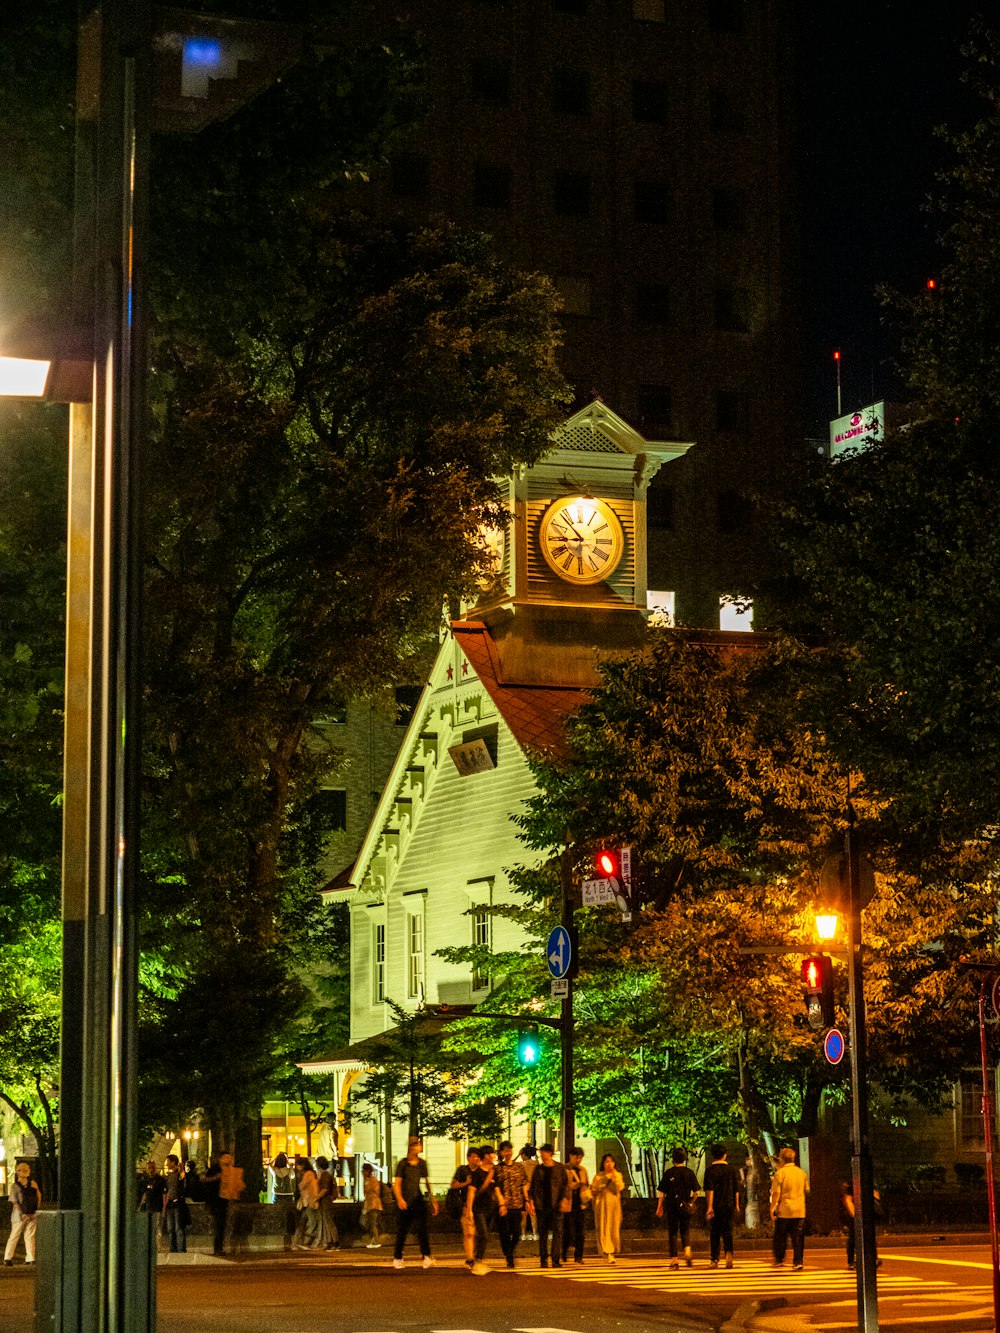 Una torre del reloj en medio de una ciudad por la noche